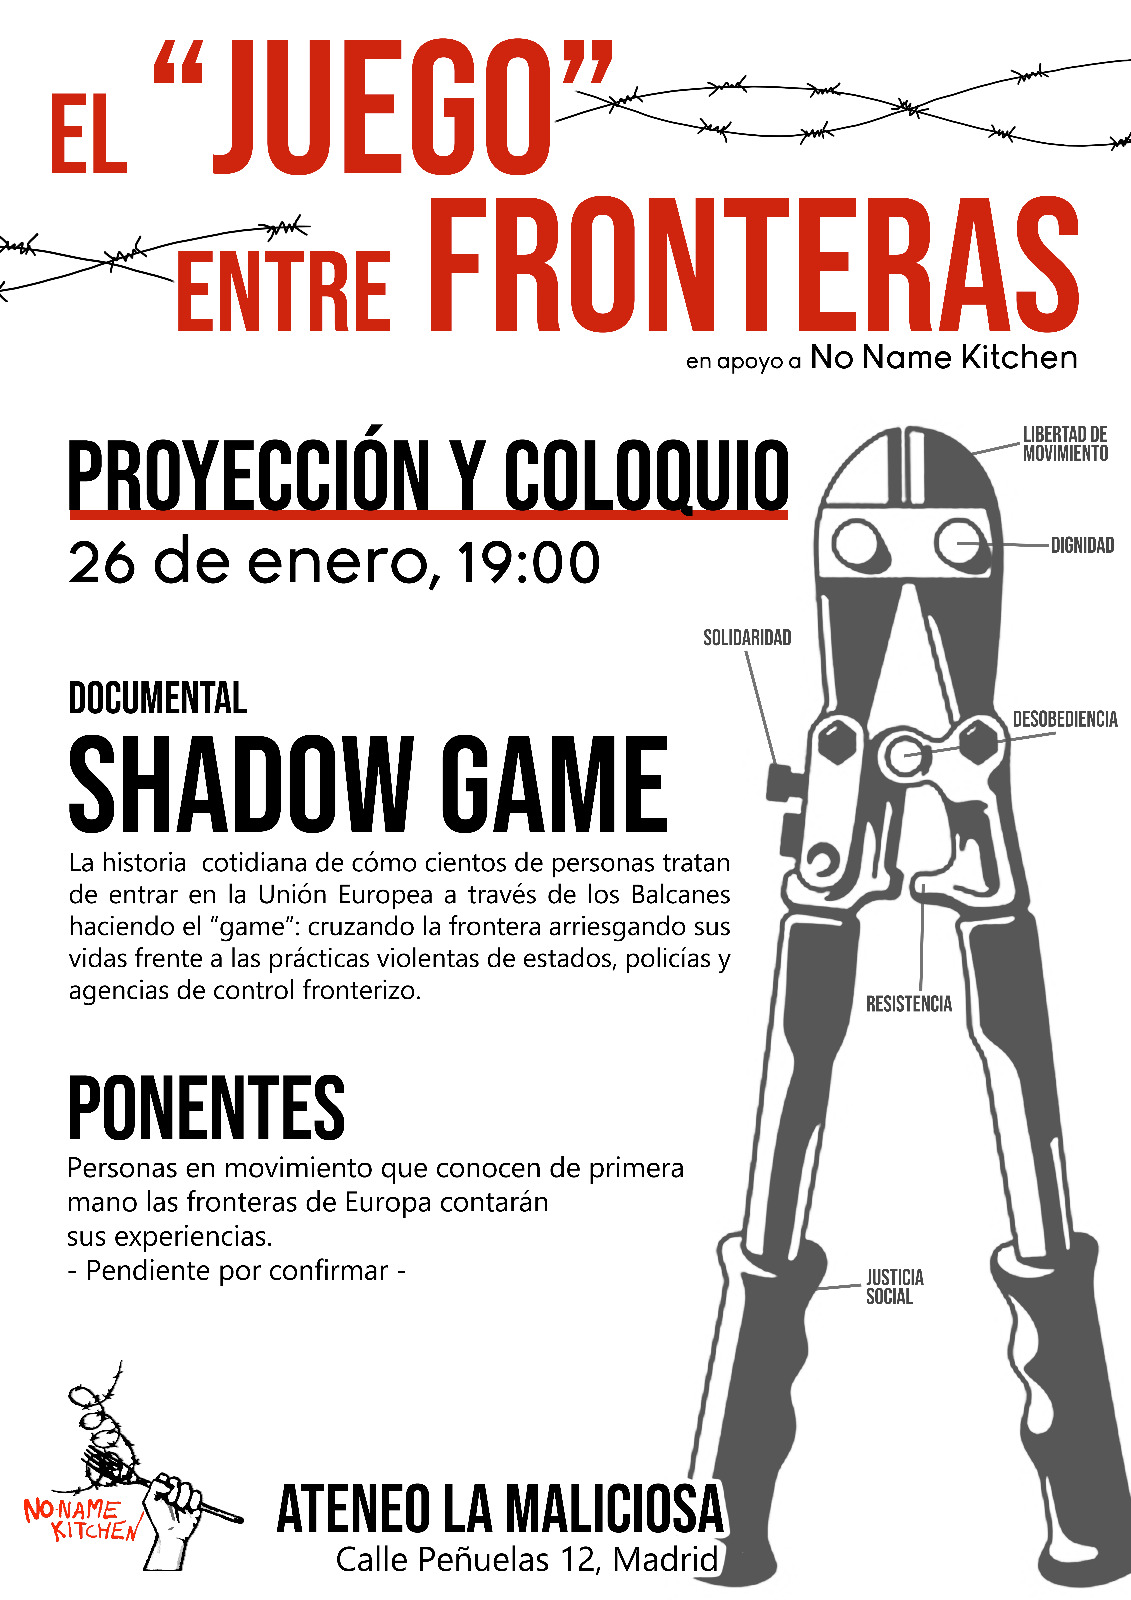 The shadow game: el «juego» entre fronteras